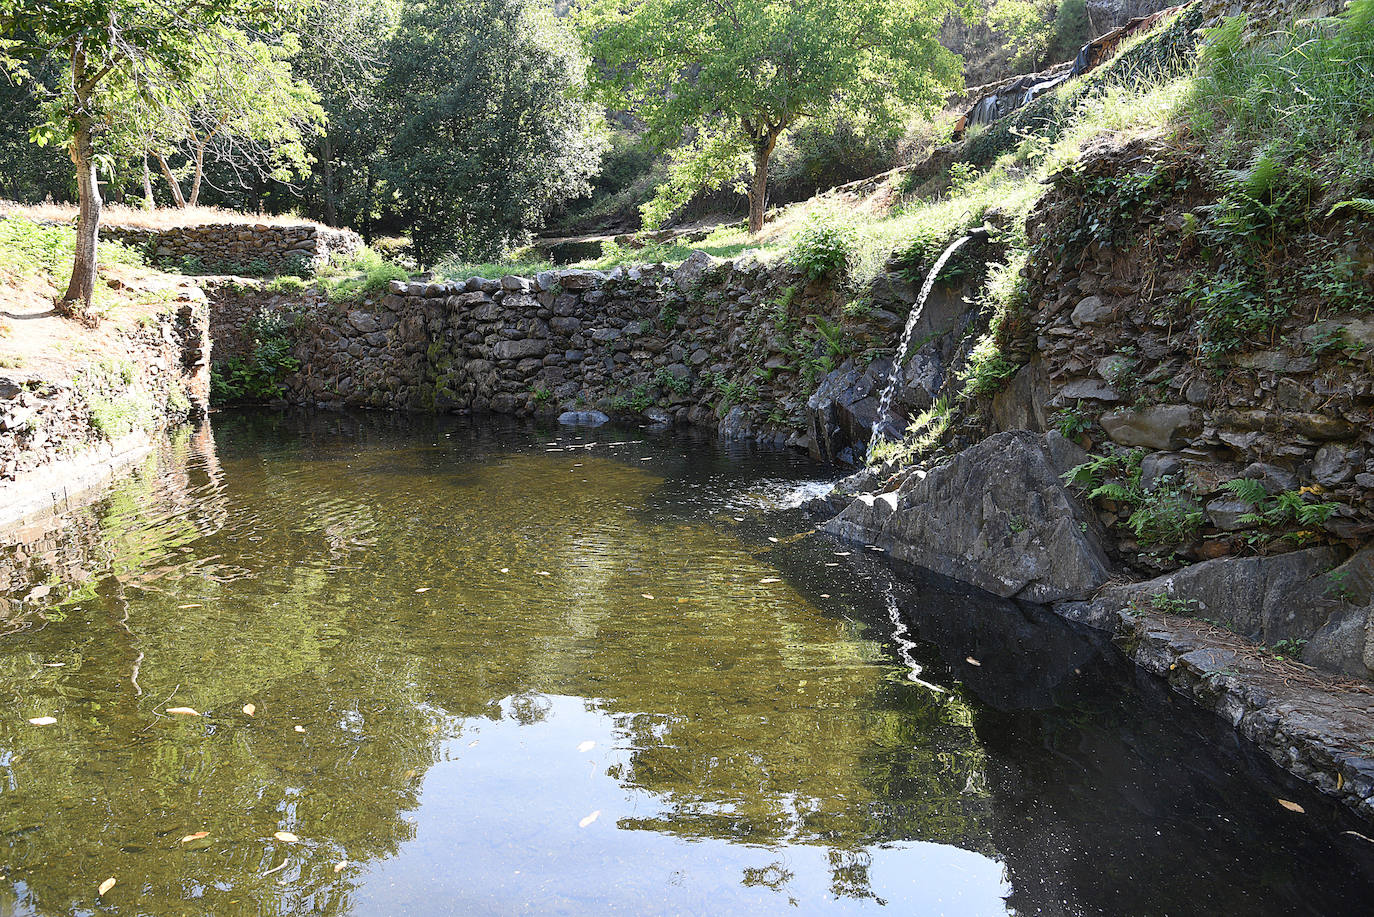 Este emblema del turismo rural en la región por ser uno de los pueblos más bonitos de Extremadura cuenta con una piscina natural en el río Árrago